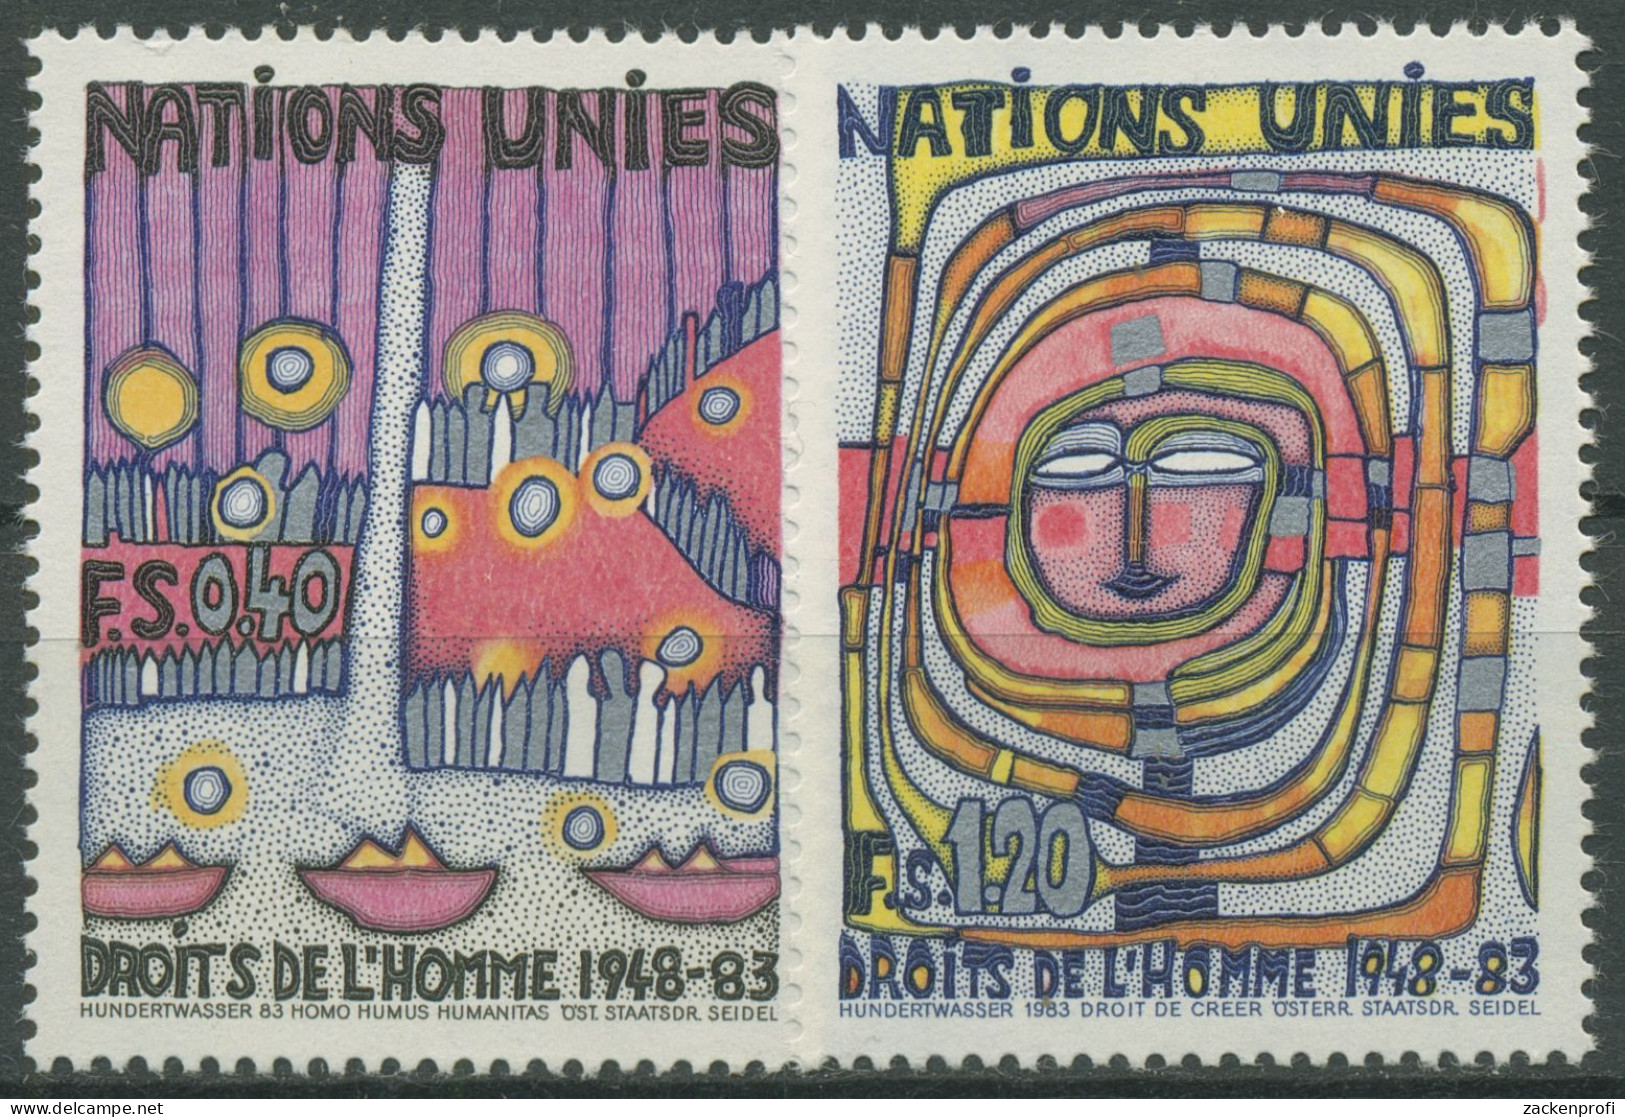 UNO Genf 1983 Erklärung Der Menschrechte Gemälde Hundertwasser 117/18 Postfrisch - Ongebruikt